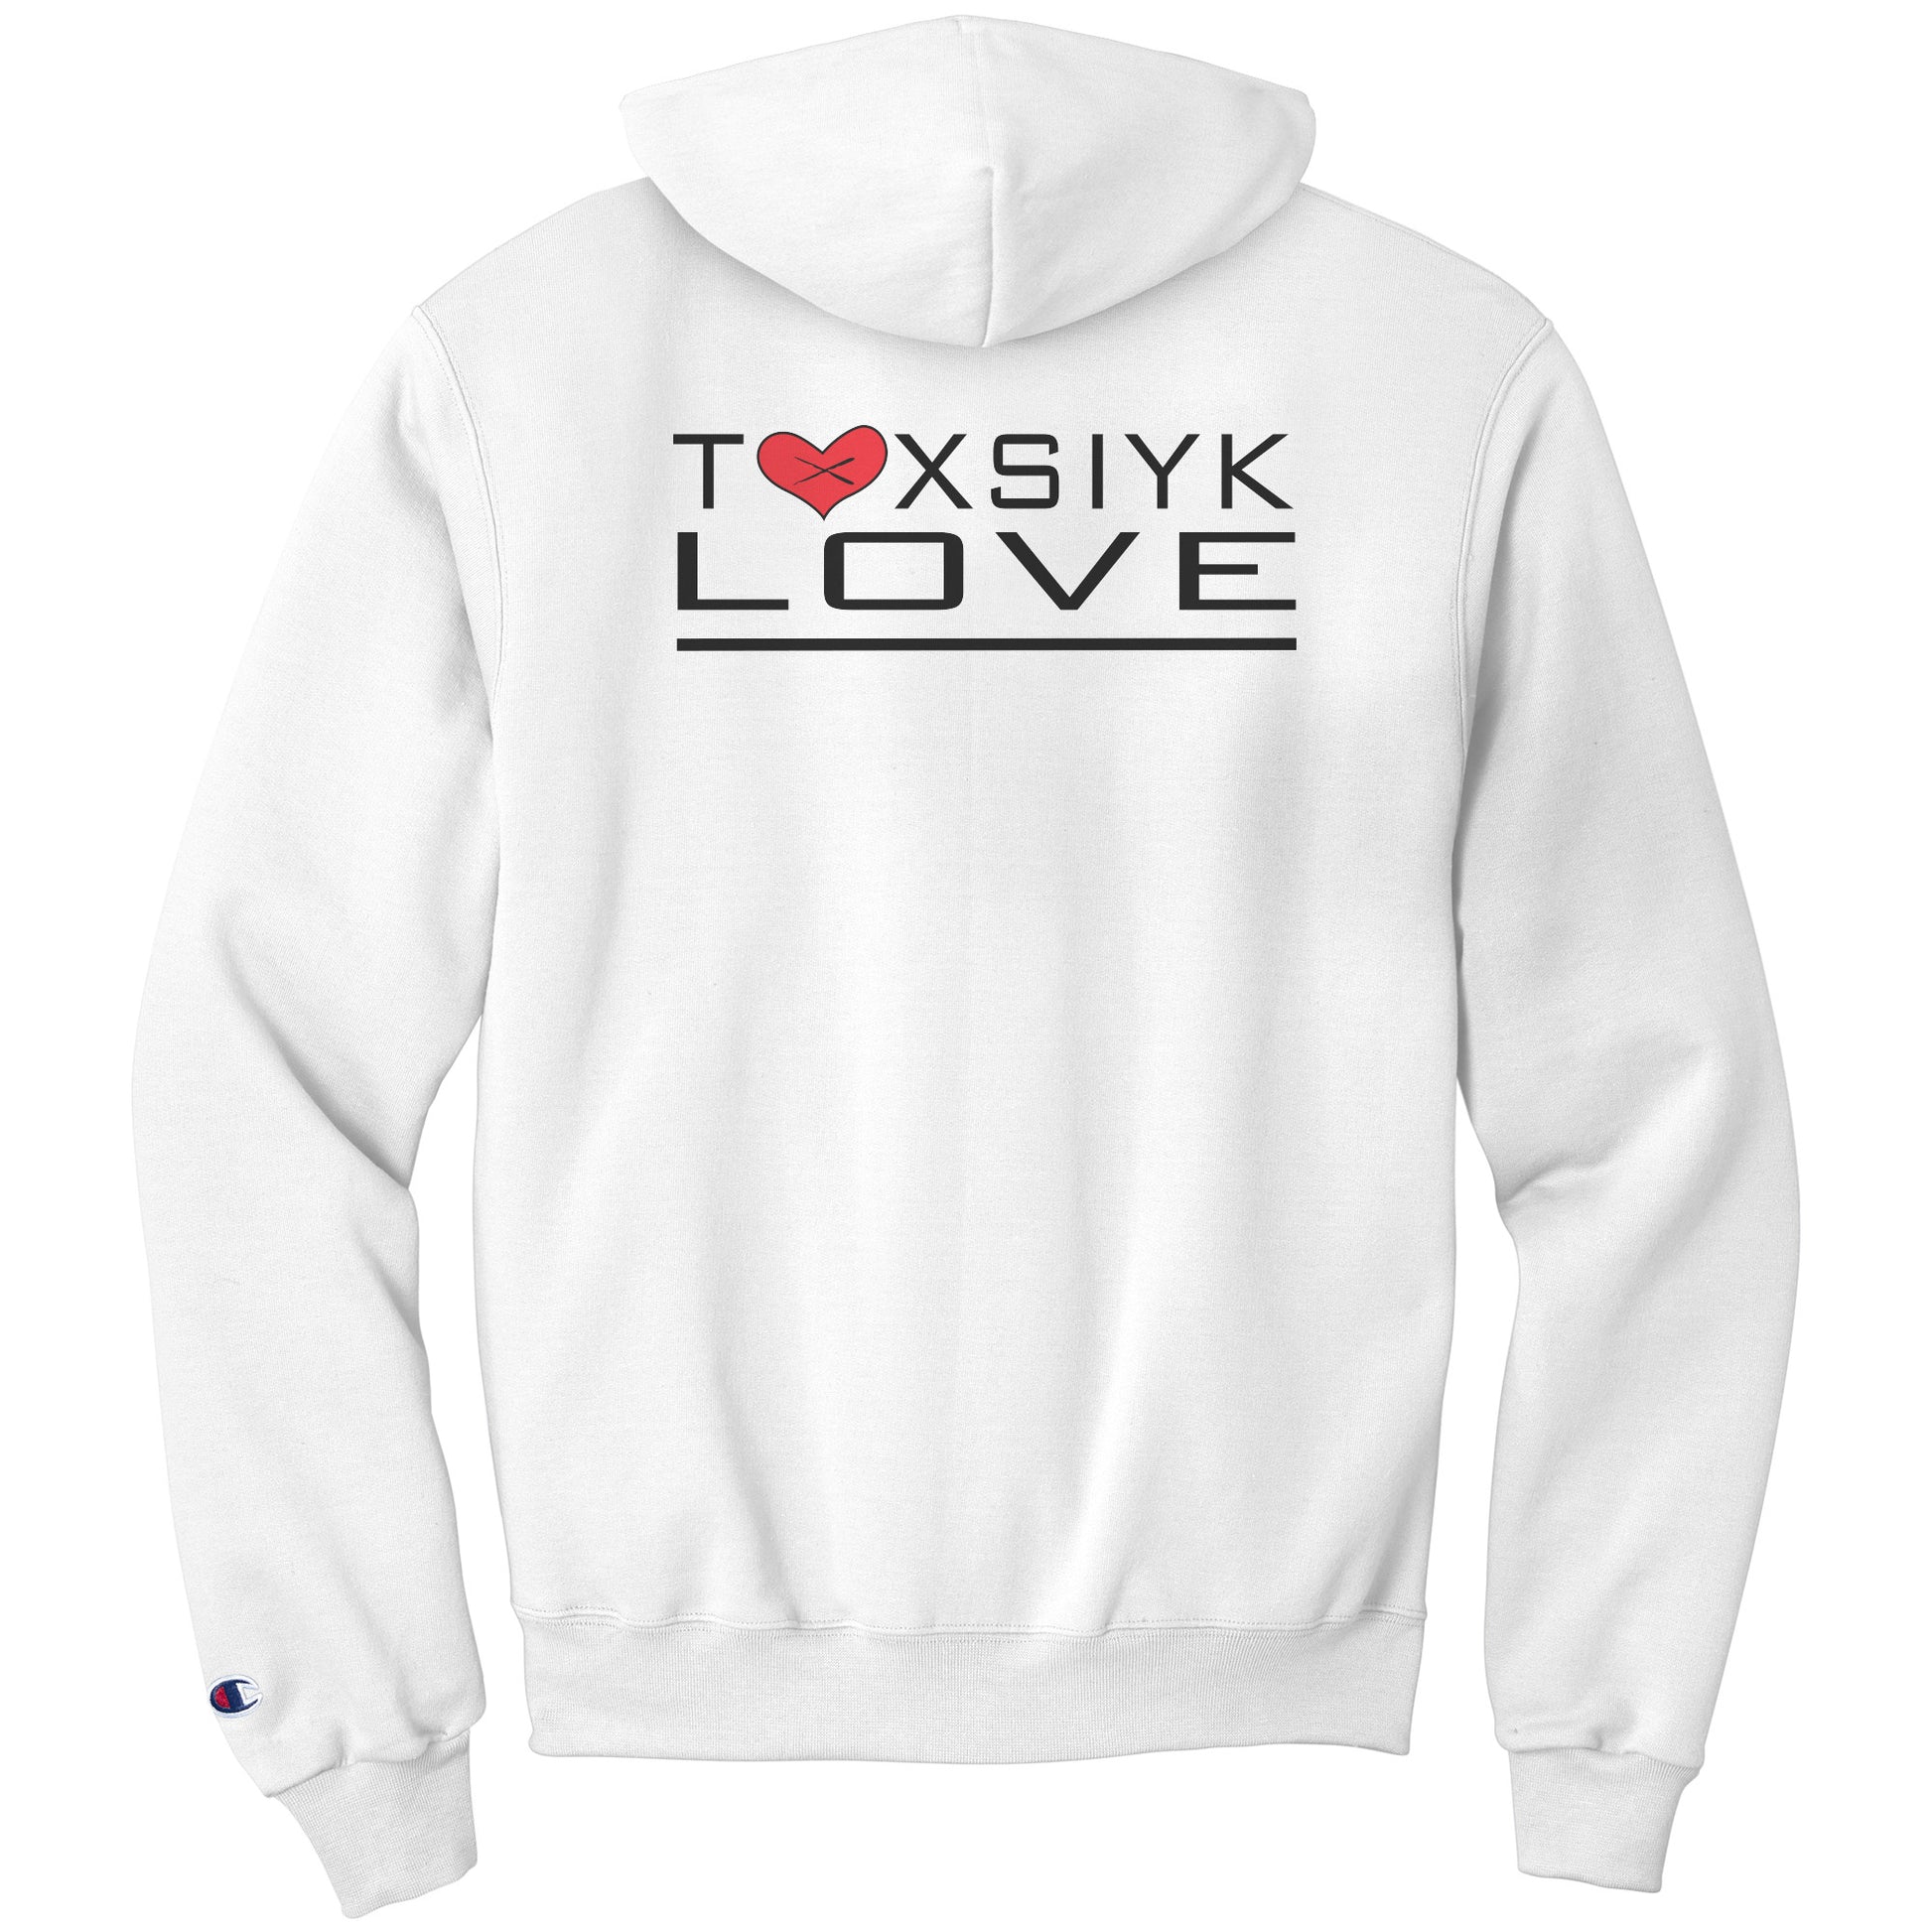 TOXSIYK LOVE SIYK HEART Champion Toxsiyk Society